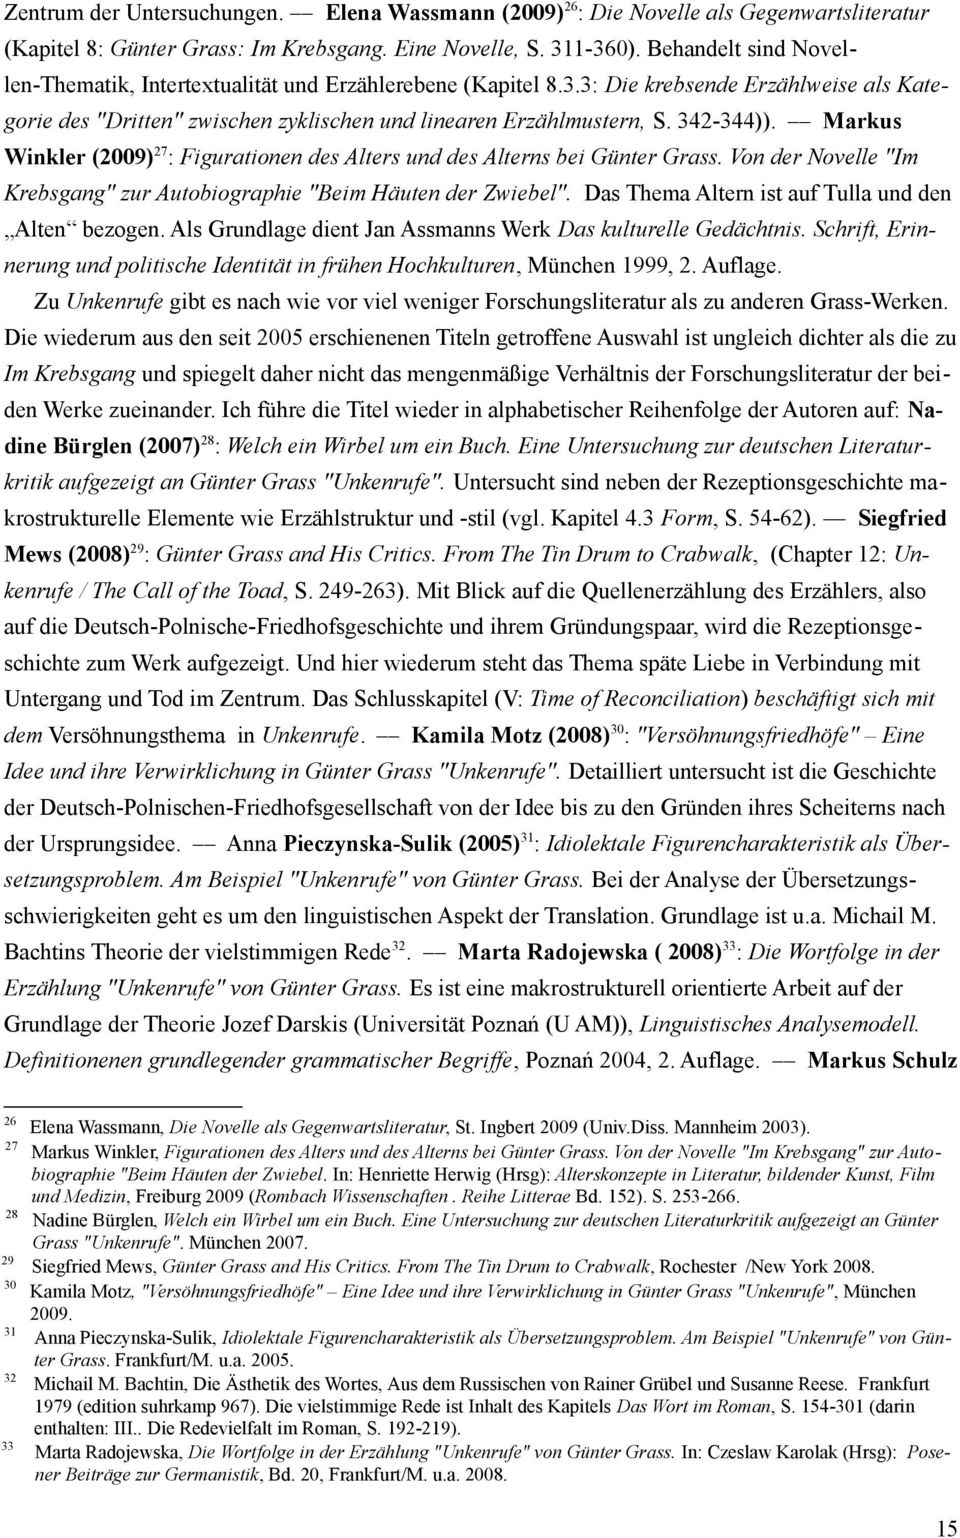 Markus Winkler (2009)27: Figurationen des Alters und des Alterns bei Günter Grass. Von der Novelle "Im Krebsgang" zur Autobiographie "Beim Häuten der Zwiebel".